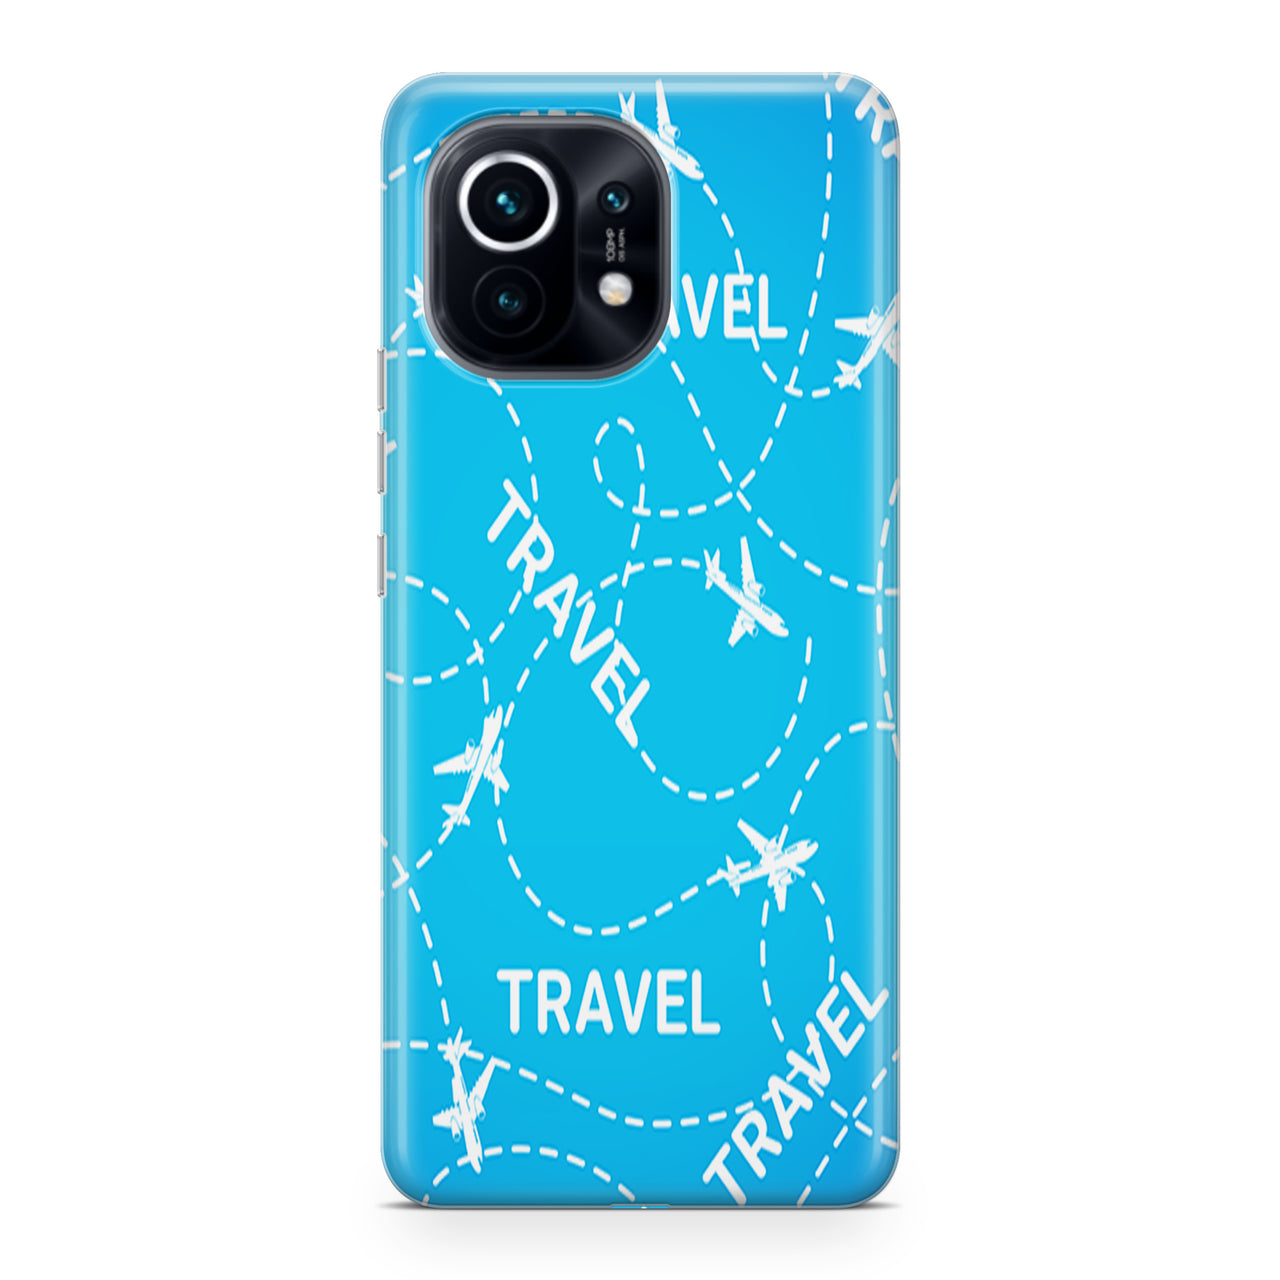 Travel & Planes Designed Xiaomi Cases